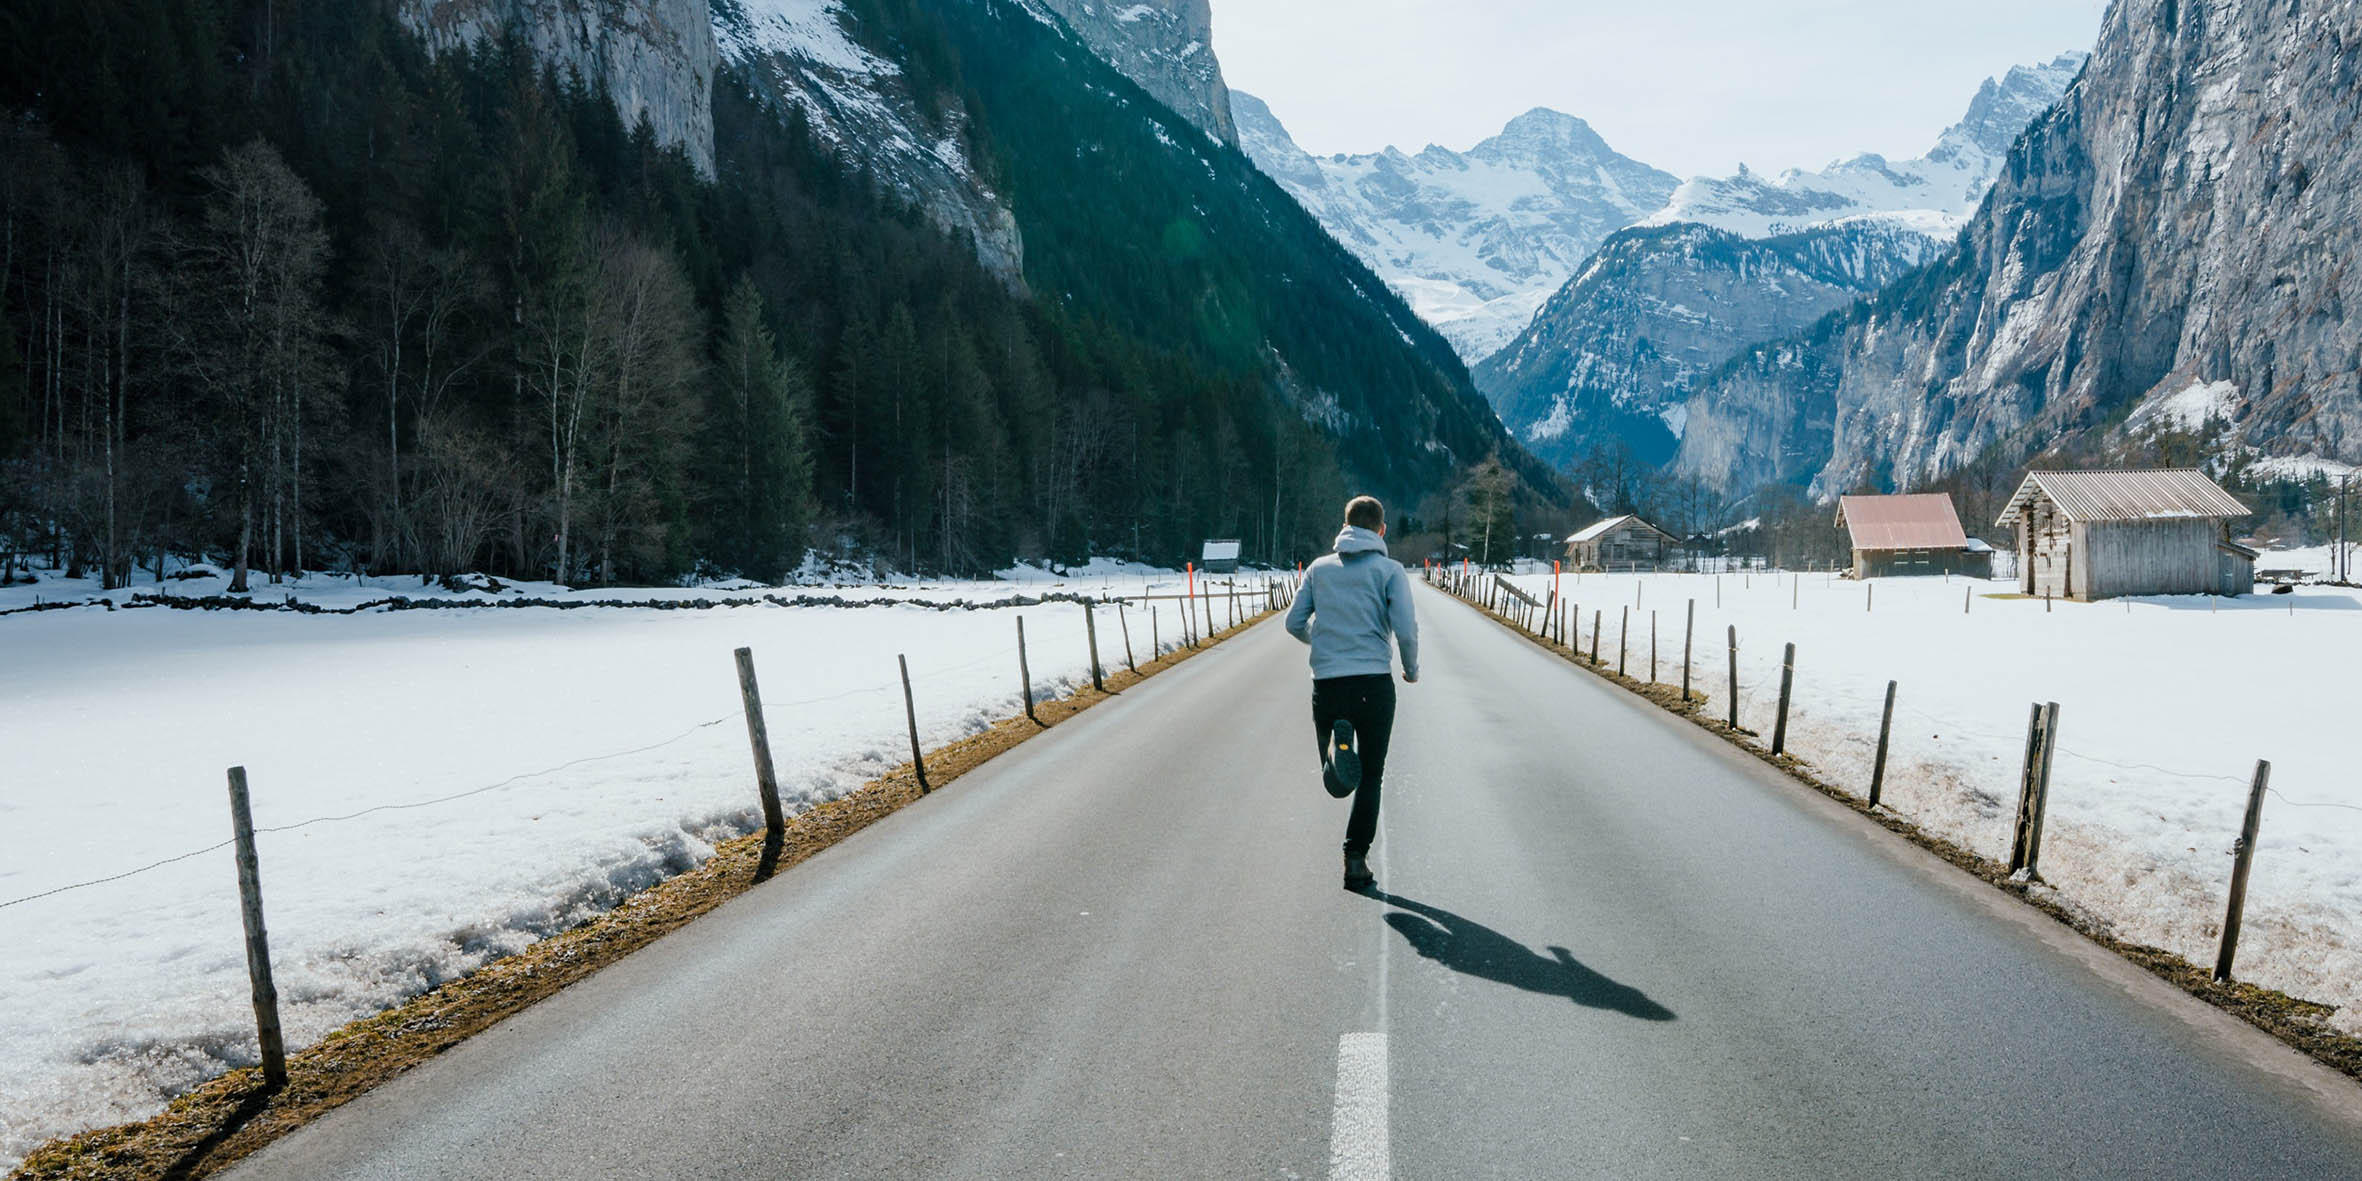 En kille i grå hoodtröja och svarta byxor springer på en ödslig väg där man ser höga berg, snö och några gamla hyddor på sidan.